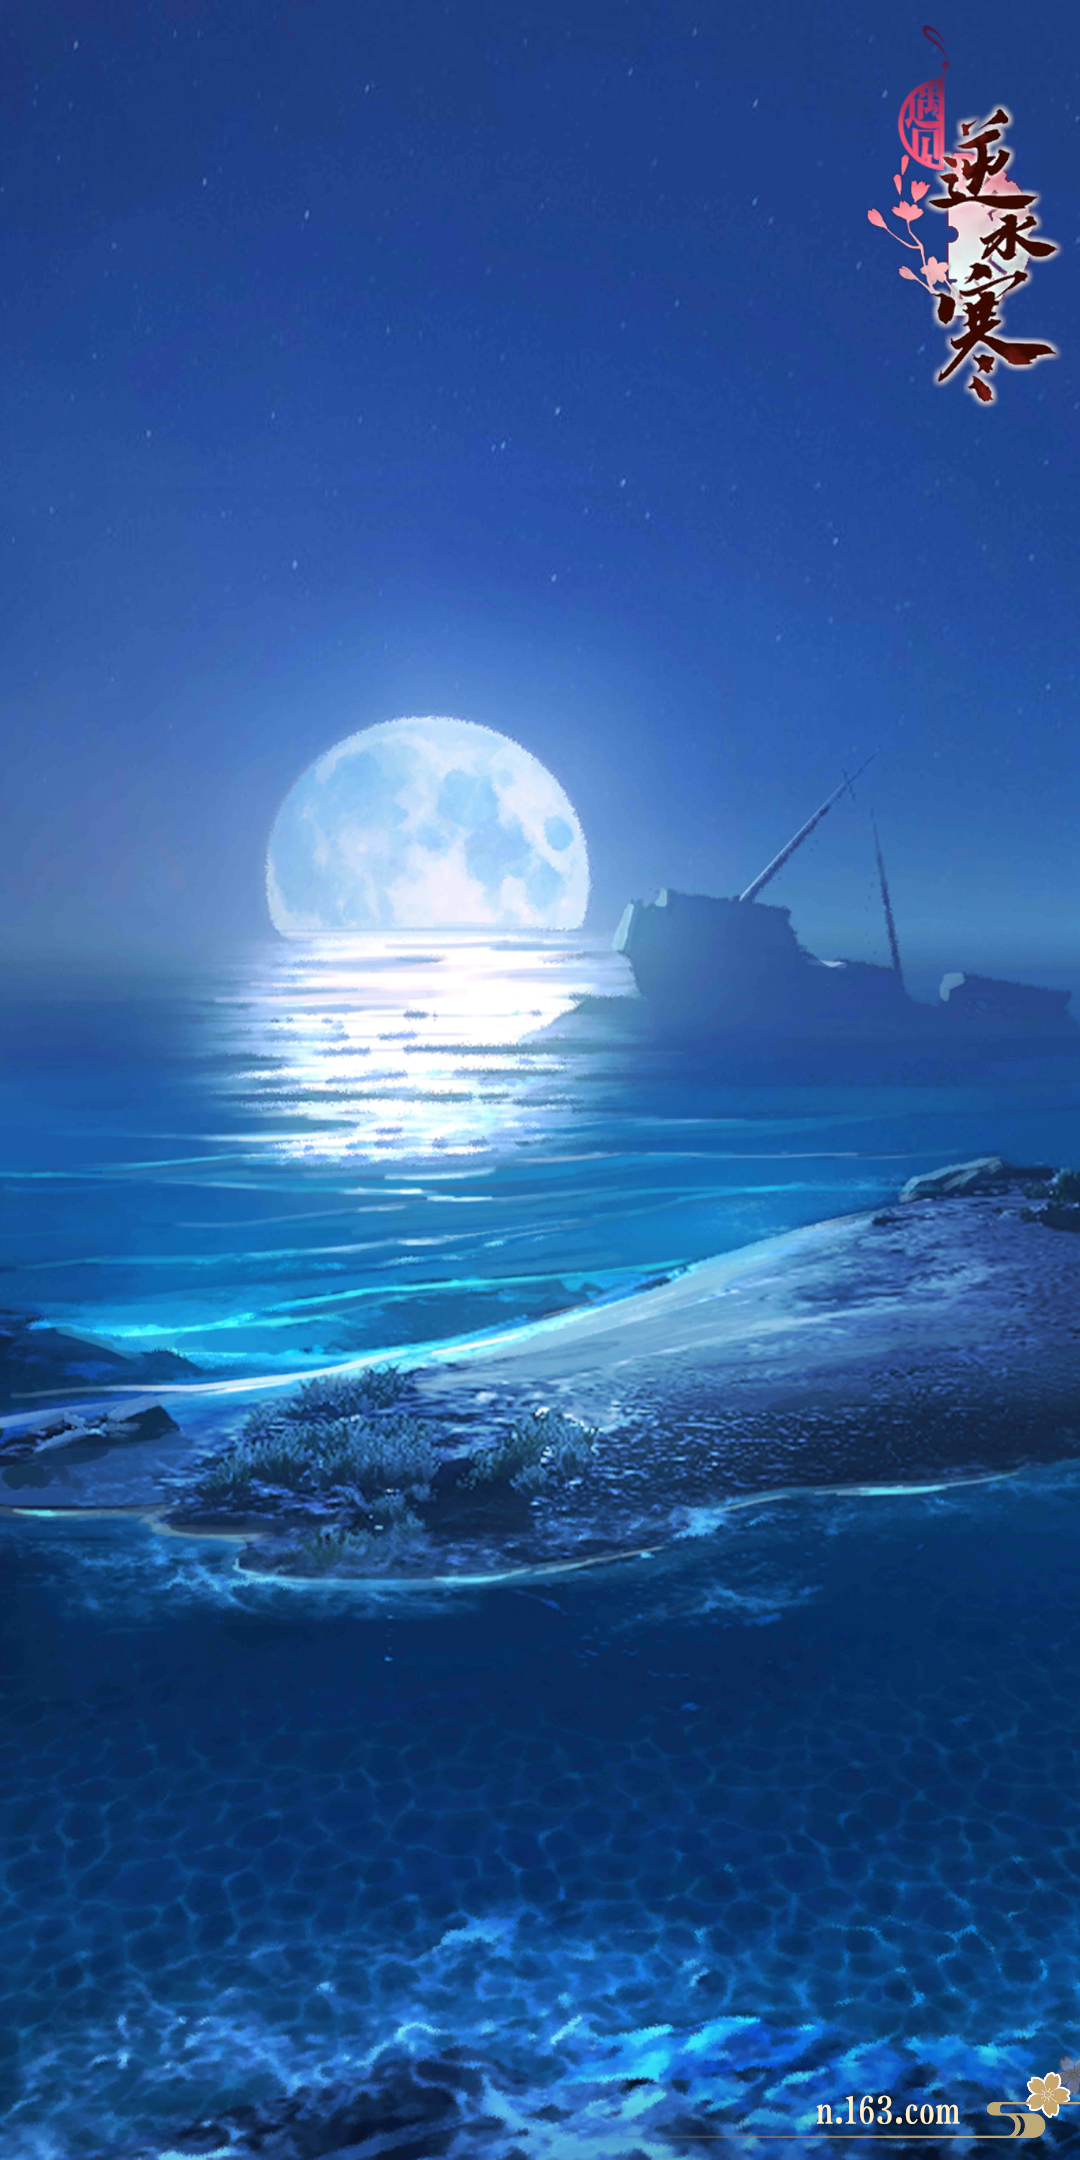 遇见逆水寒【逆水寒】——「沧海月明」夜色中的碎月湾.